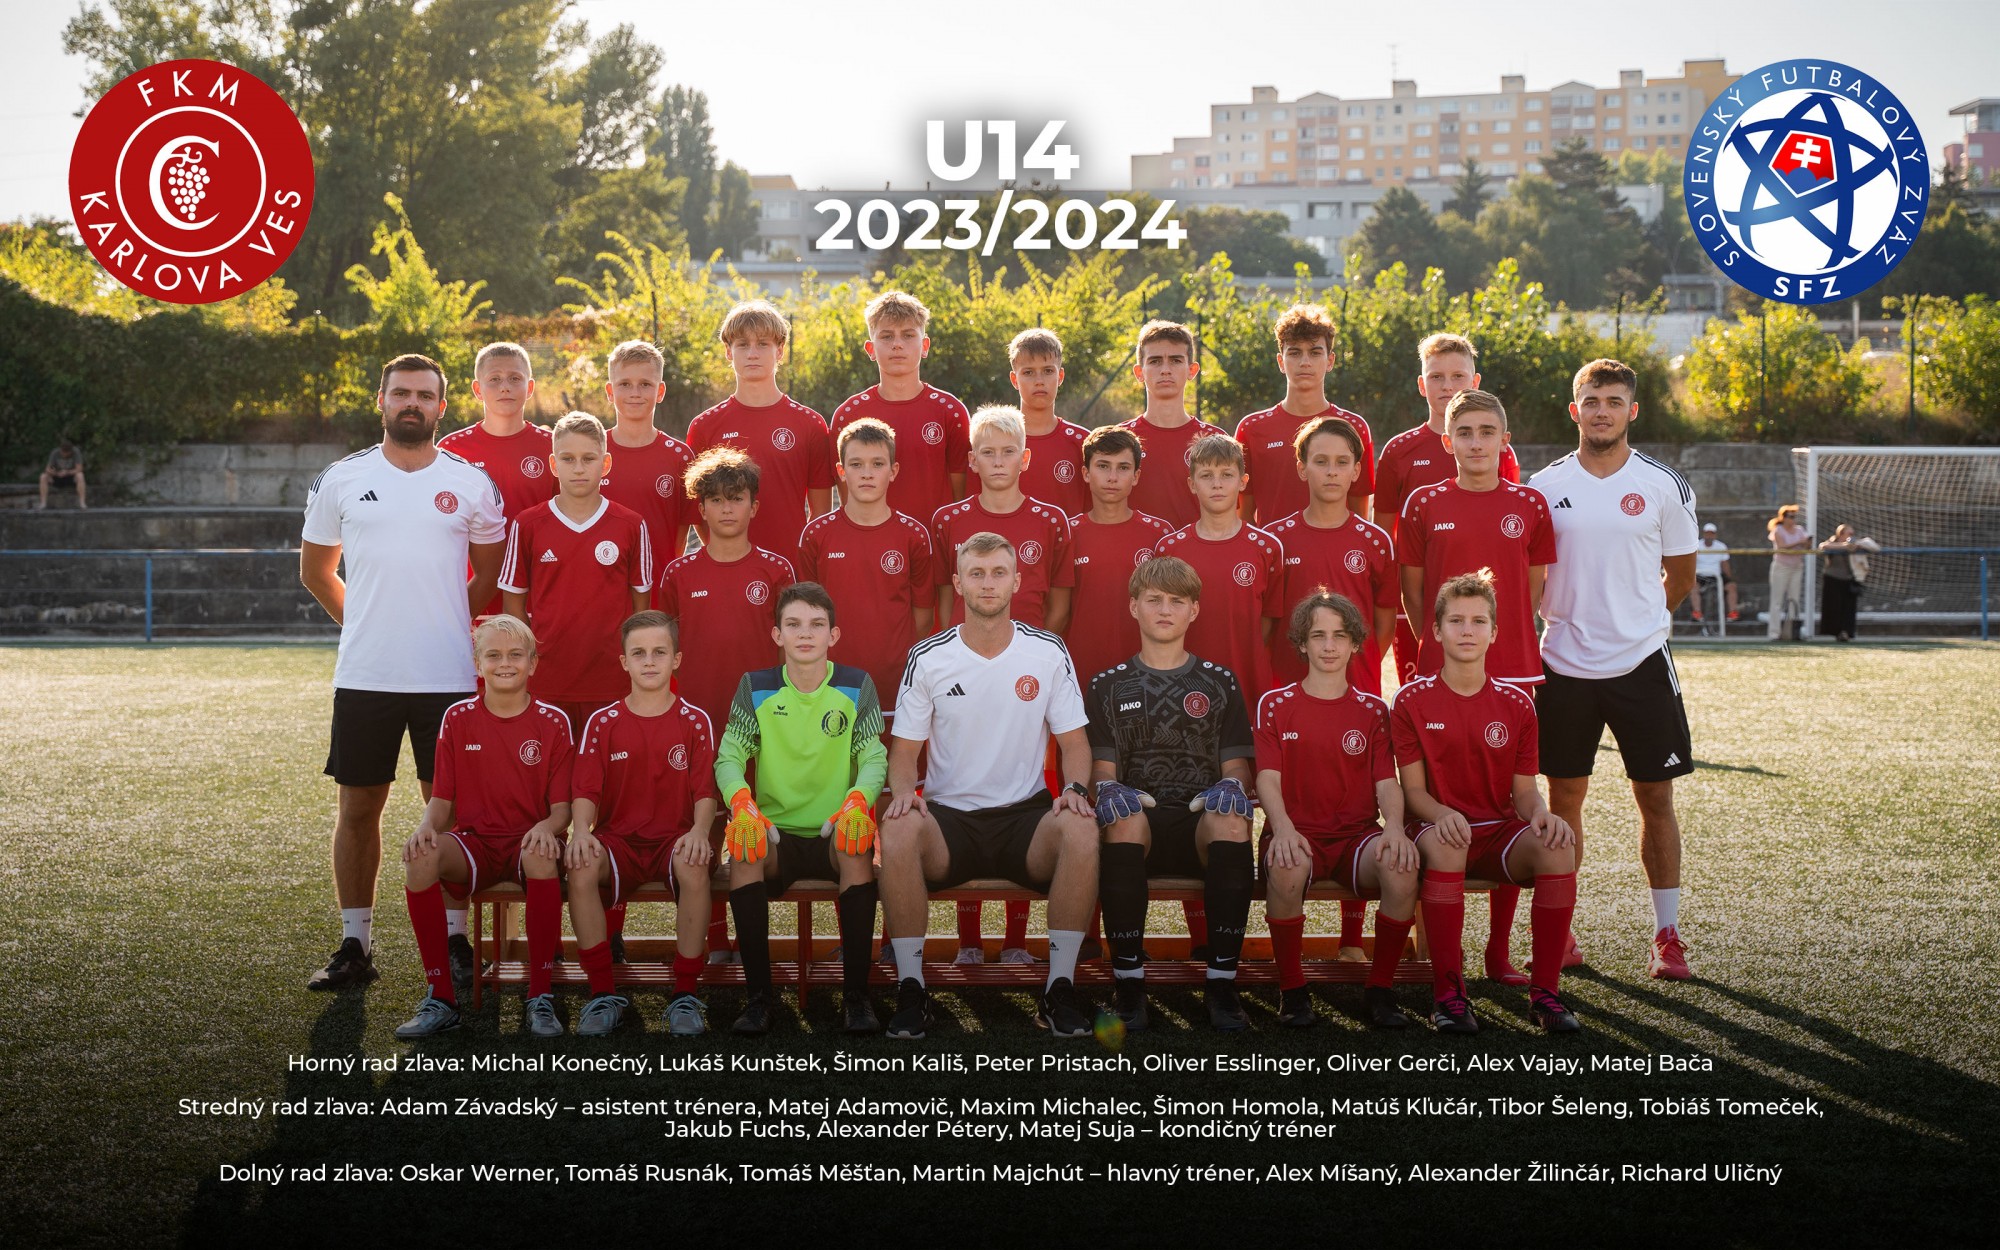 Starší žiaci U14 (2010) súťažný ročník 2021/2022